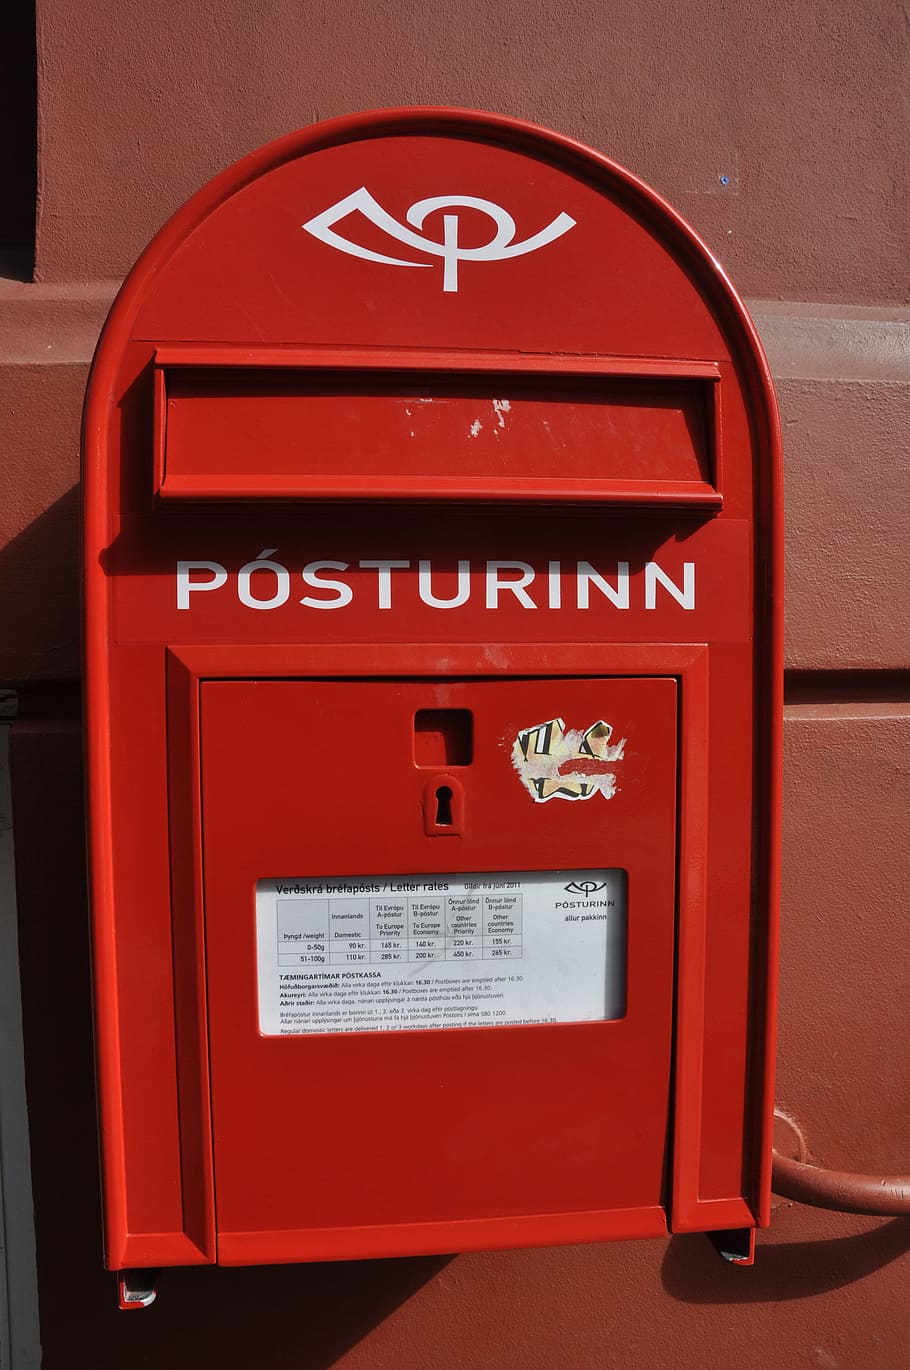 Caixa de correio, Correio, comunicação, entrega, serviço, caixa postal, porte, contato, correspondência, entregar